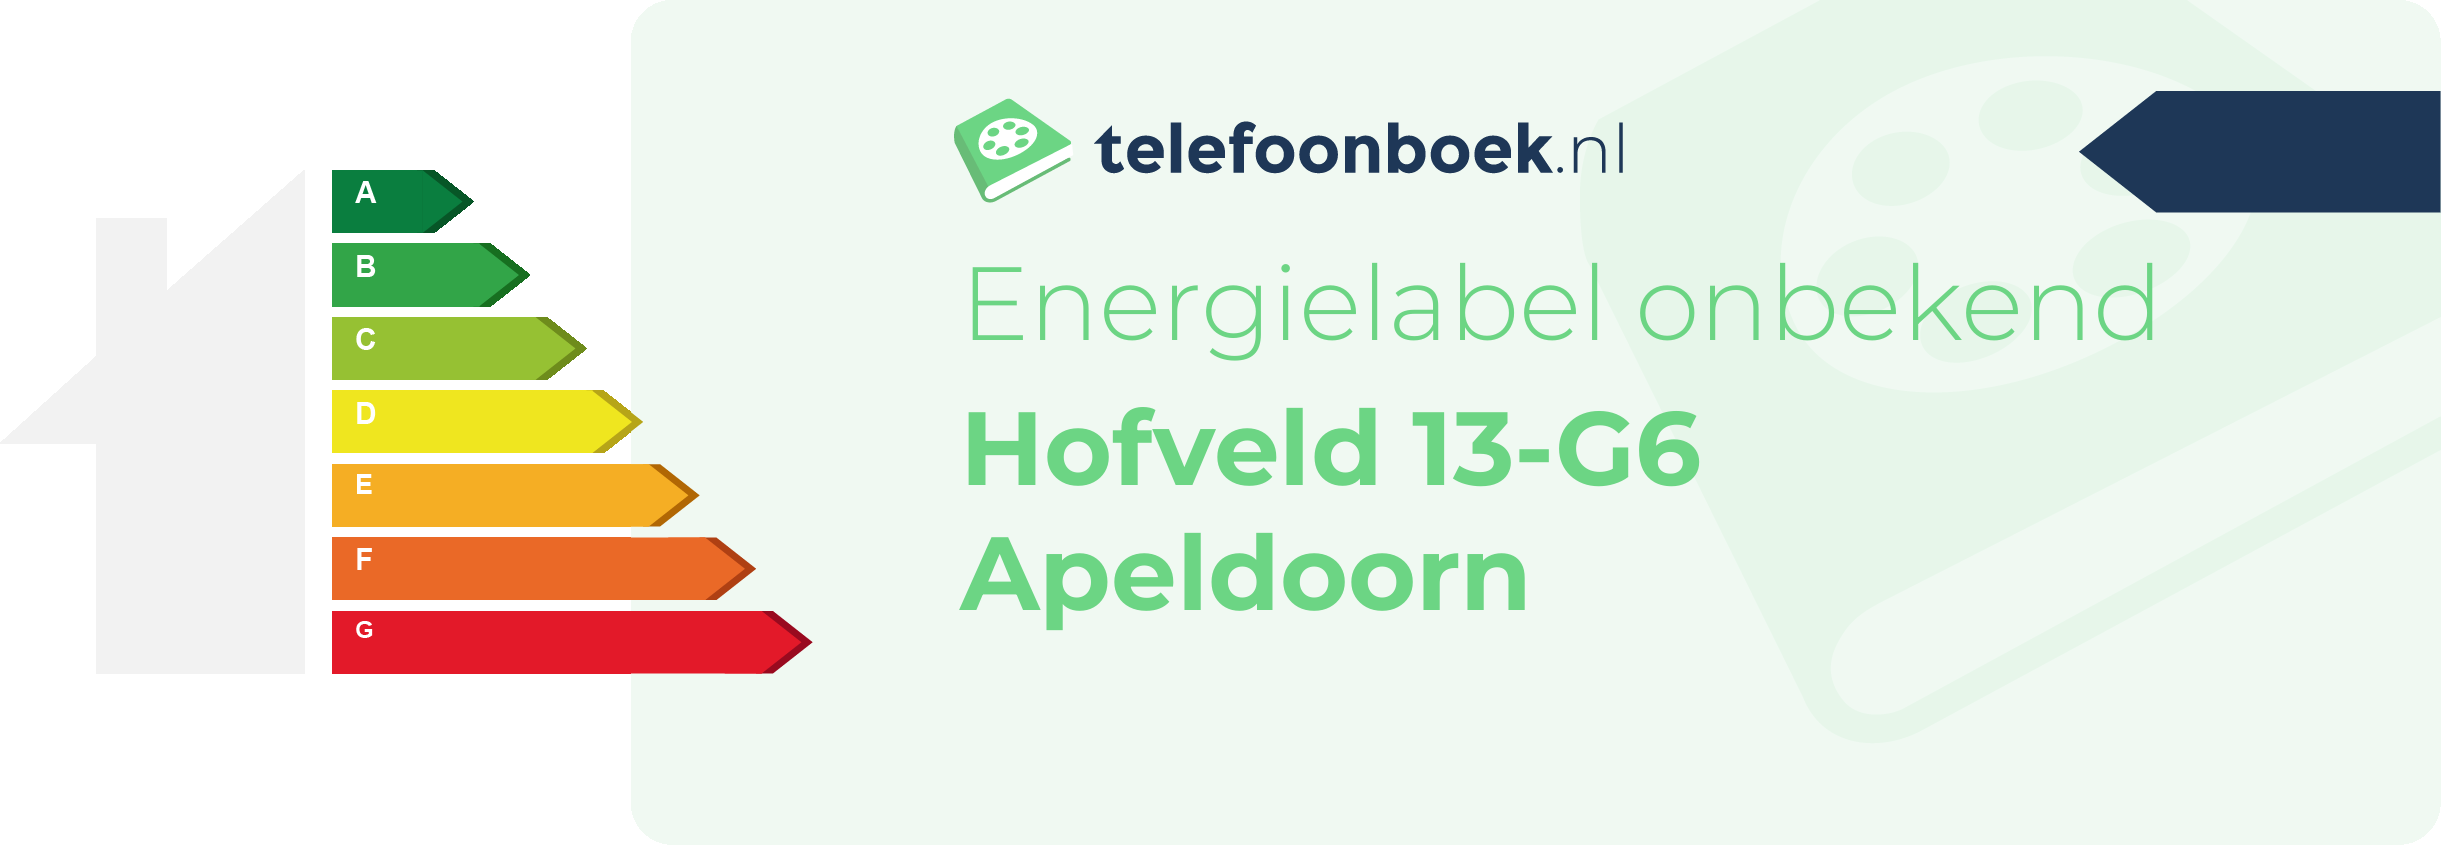 Energielabel Hofveld 13-G6 Apeldoorn